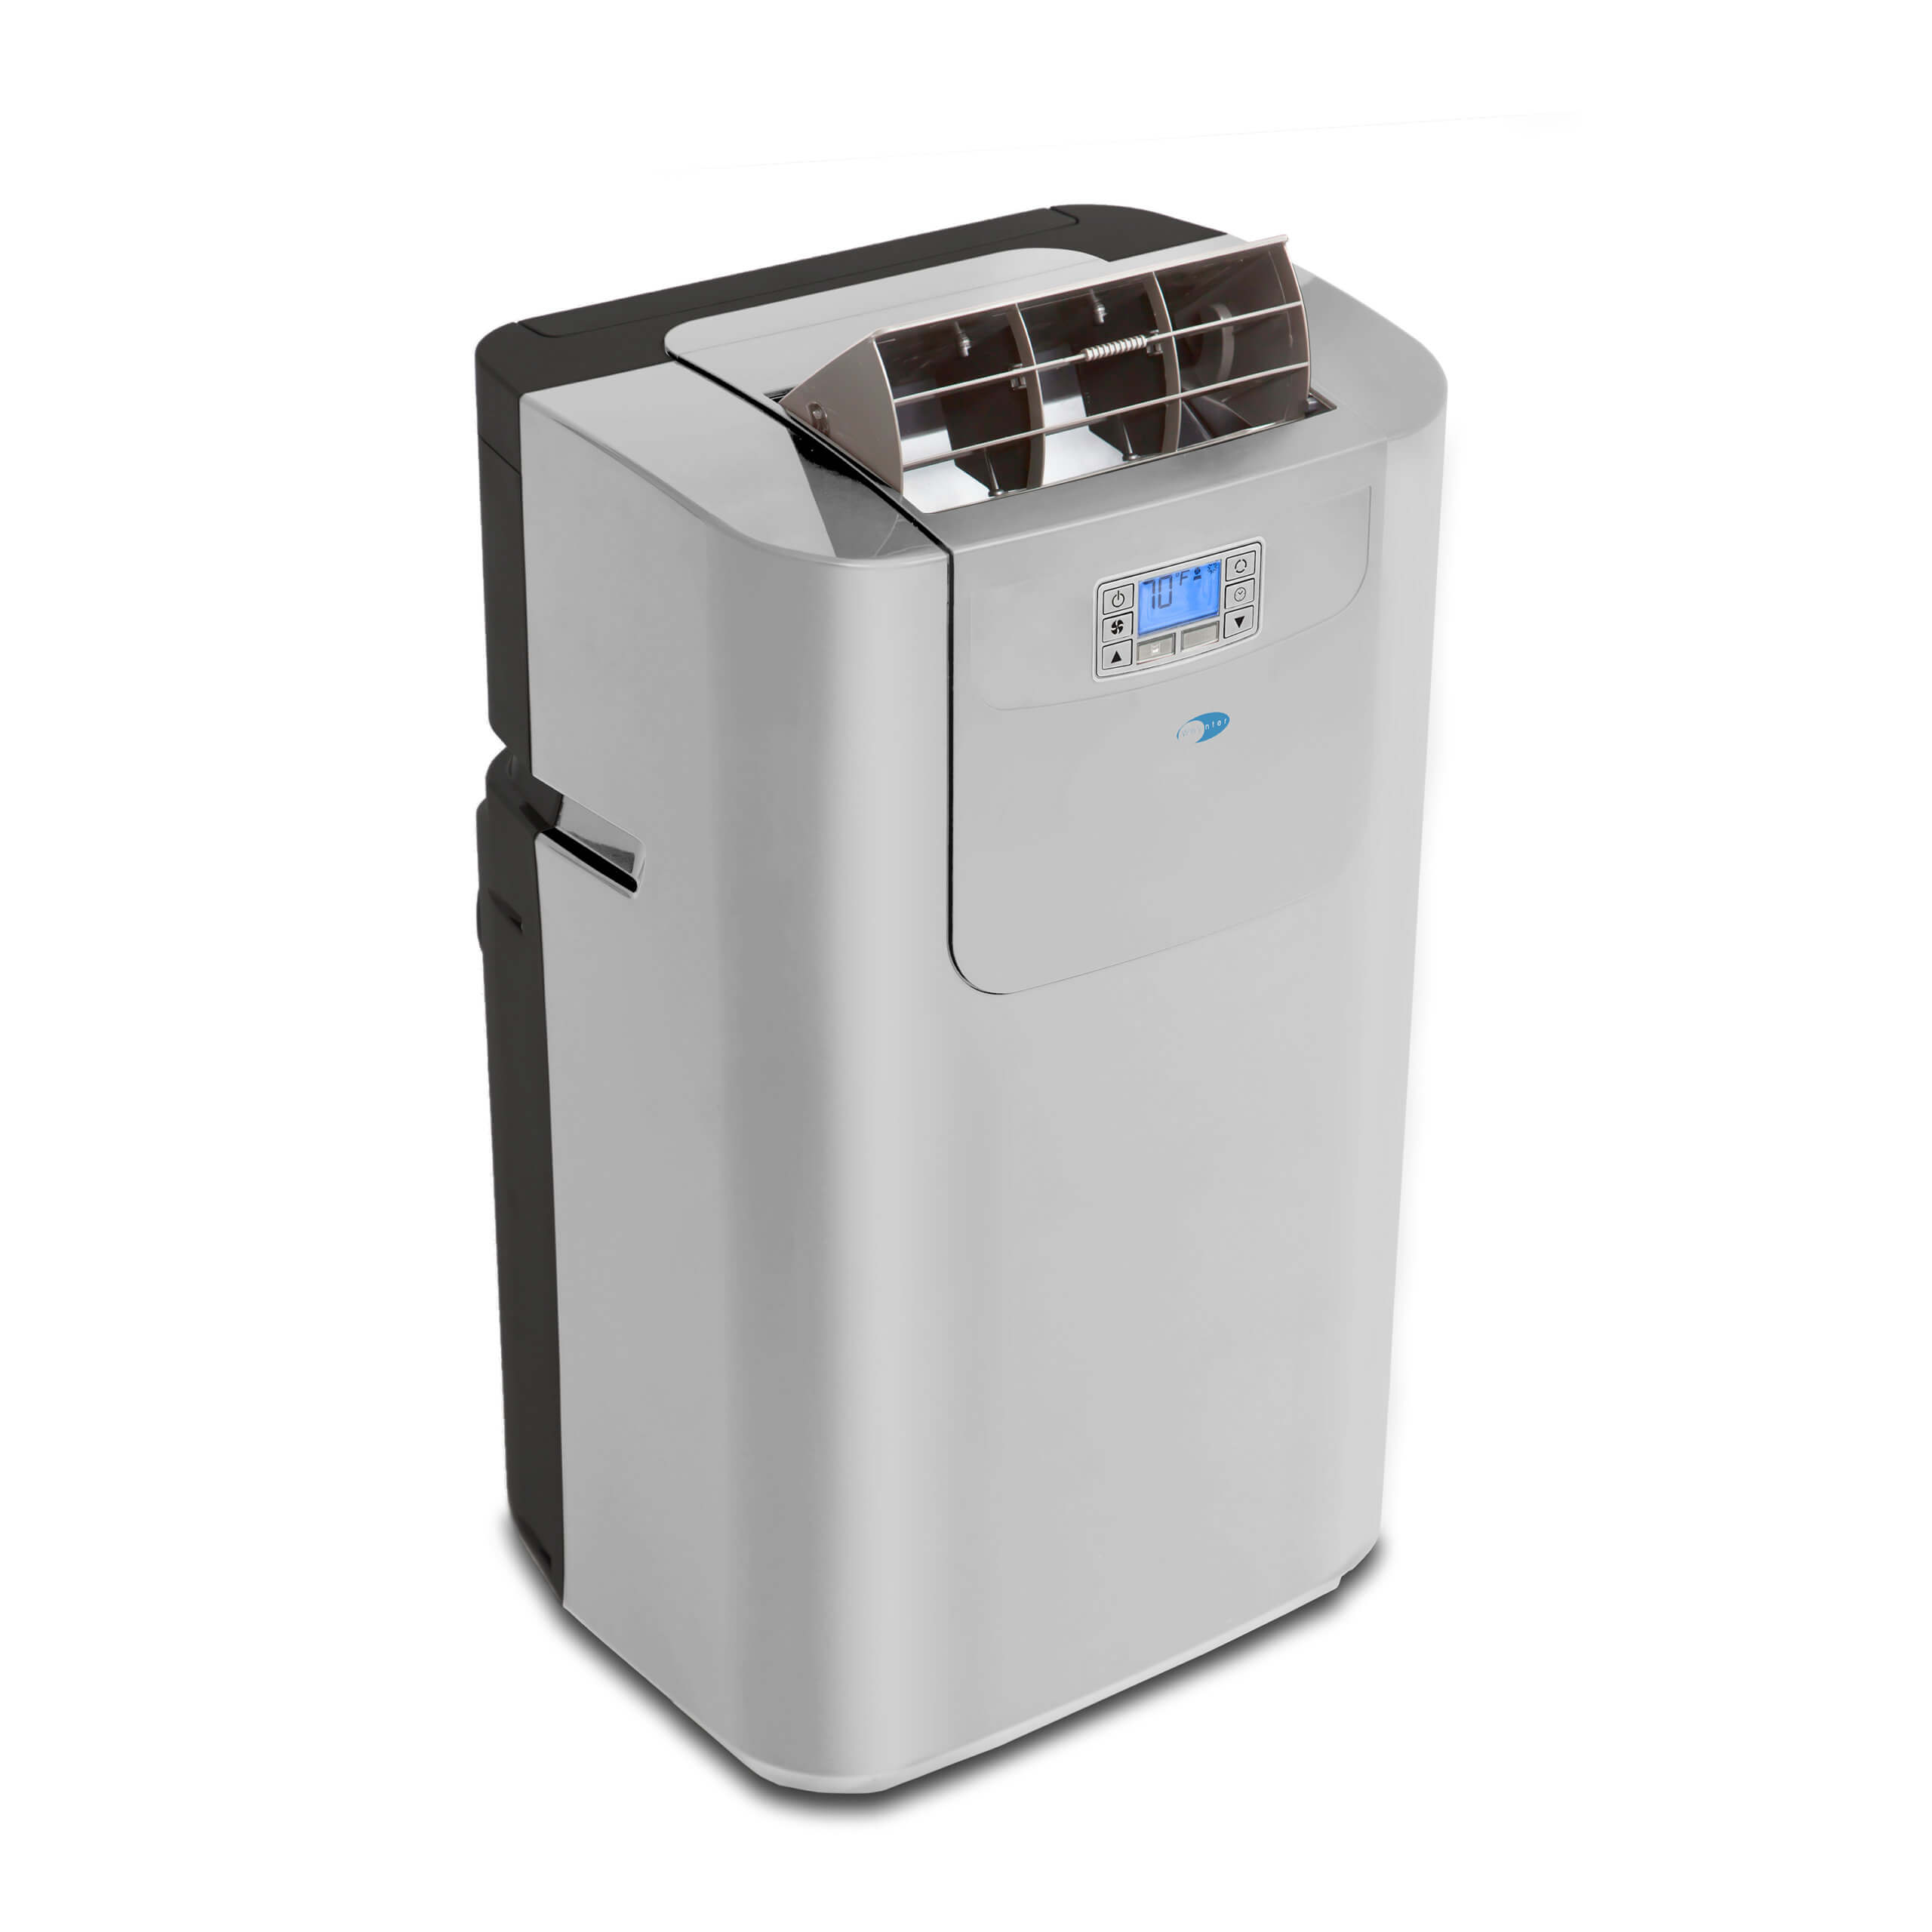  Whynter aire acondicionado portátil con calentador, 12 000 BTU,  blanco helado, (ARC-12SDH) : Todo lo demás